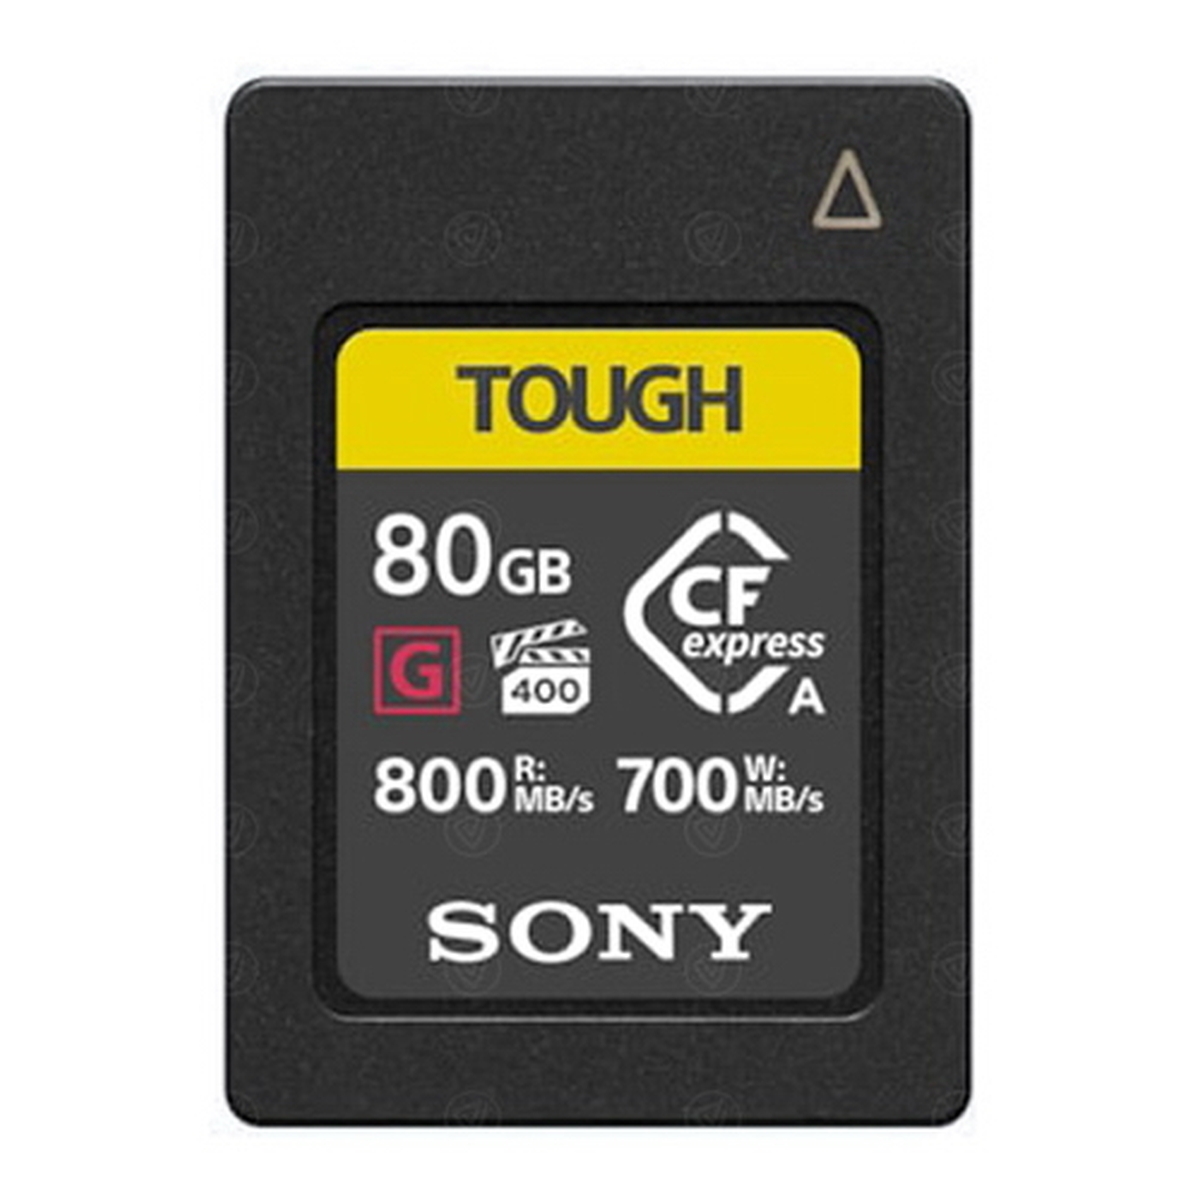 Sony 80 GB CFexpress Tough G Typ A